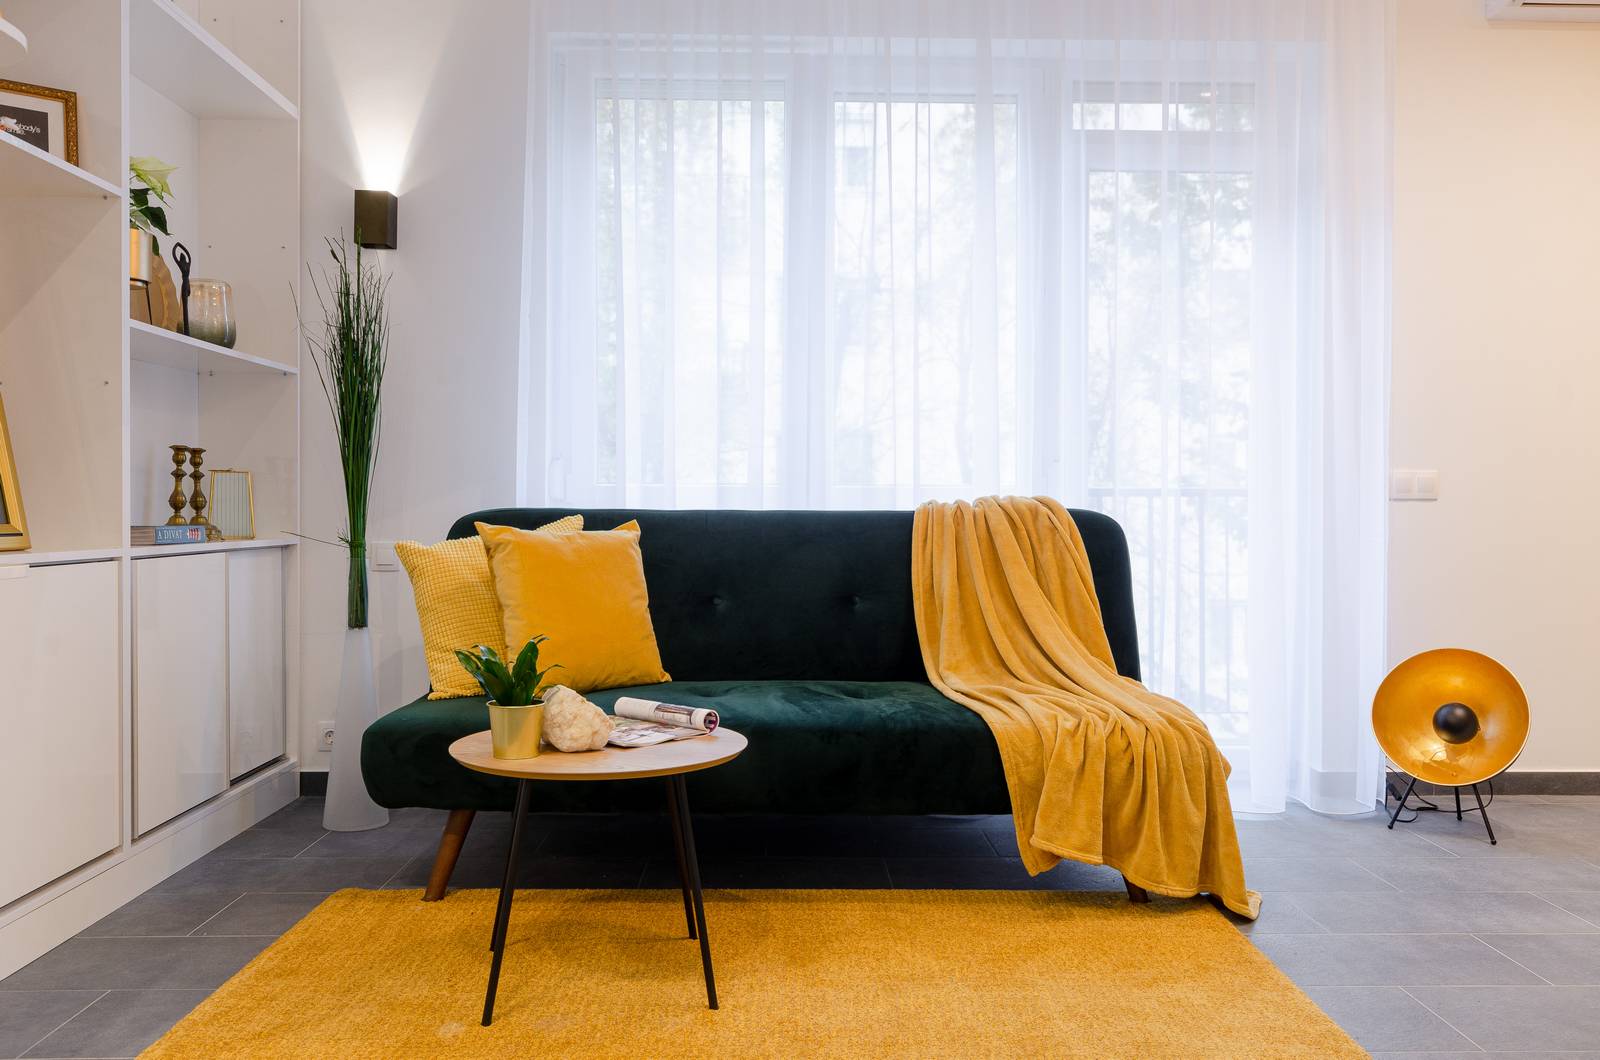 Phòng khách nổi bật với ghế sofa xanh ngọc lục bảo thời thường, khi kết hợp cùng thảm trải sàn, gối tựa và chăn mỏng màu vàng mù tạt thì càng thêm ấn tượng.